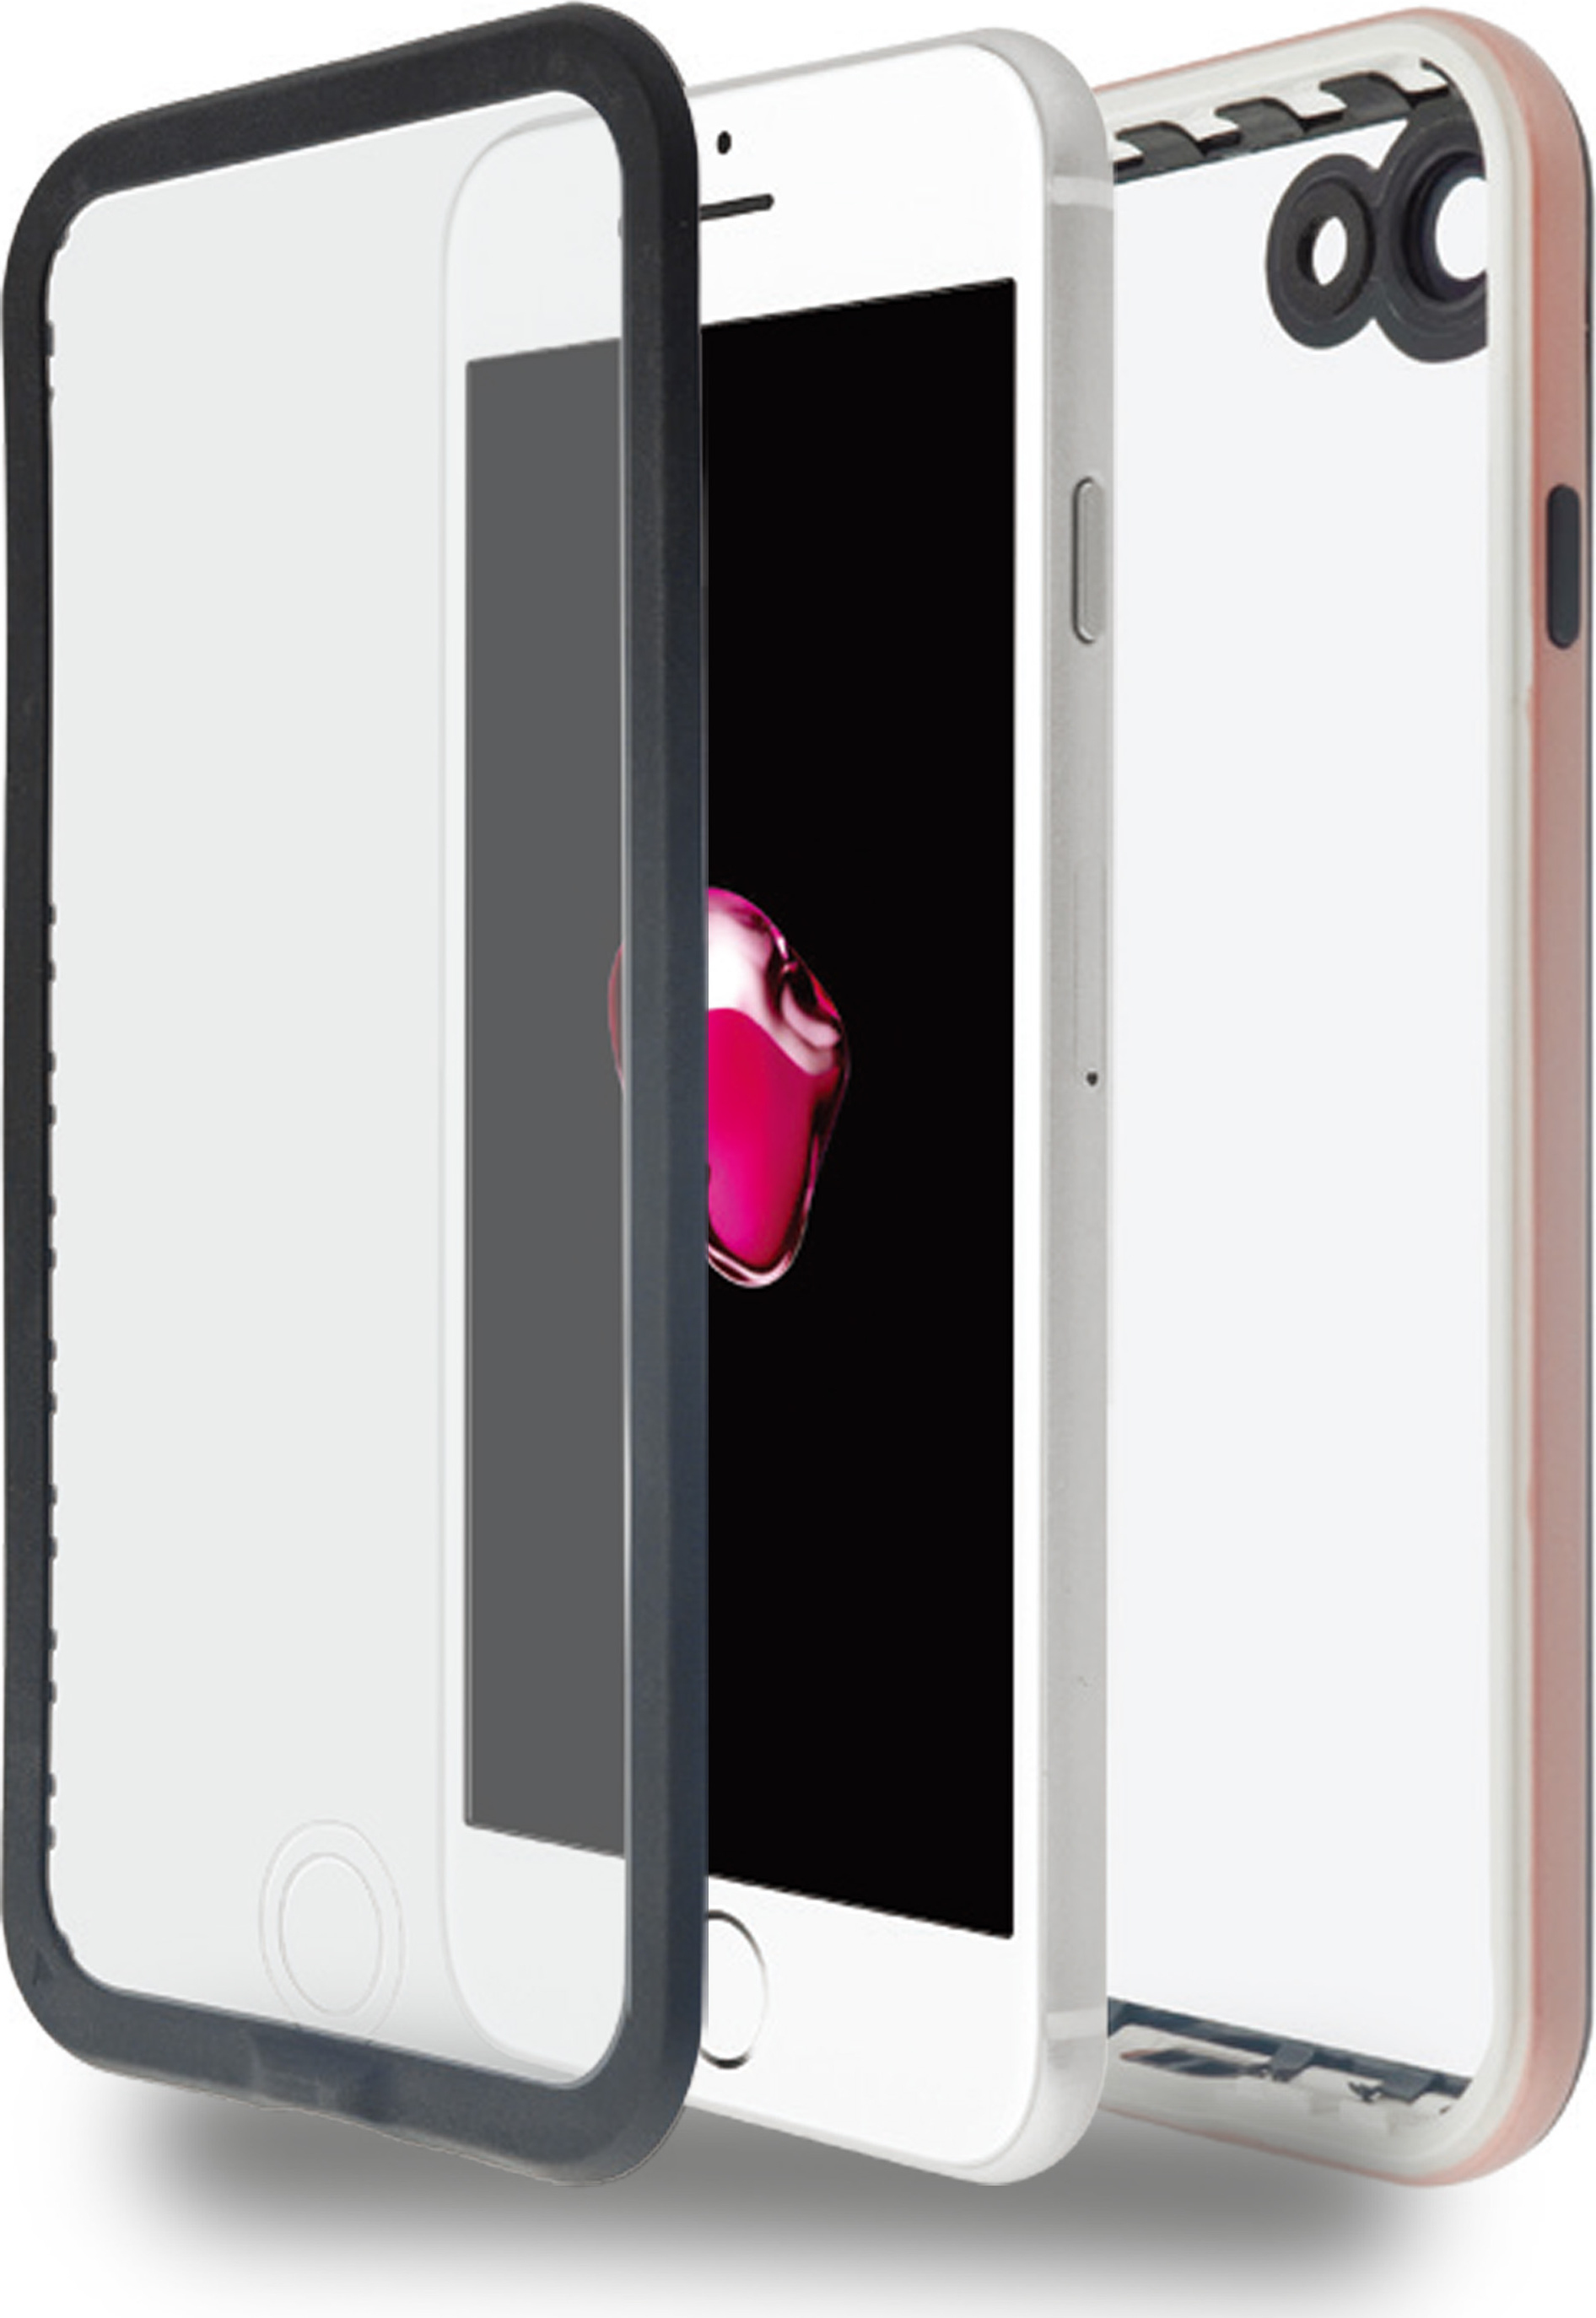 Azuri Forte Sport schok- & waterbestendig rosé goud - voor iPhone 7 kopen » Centralpoint